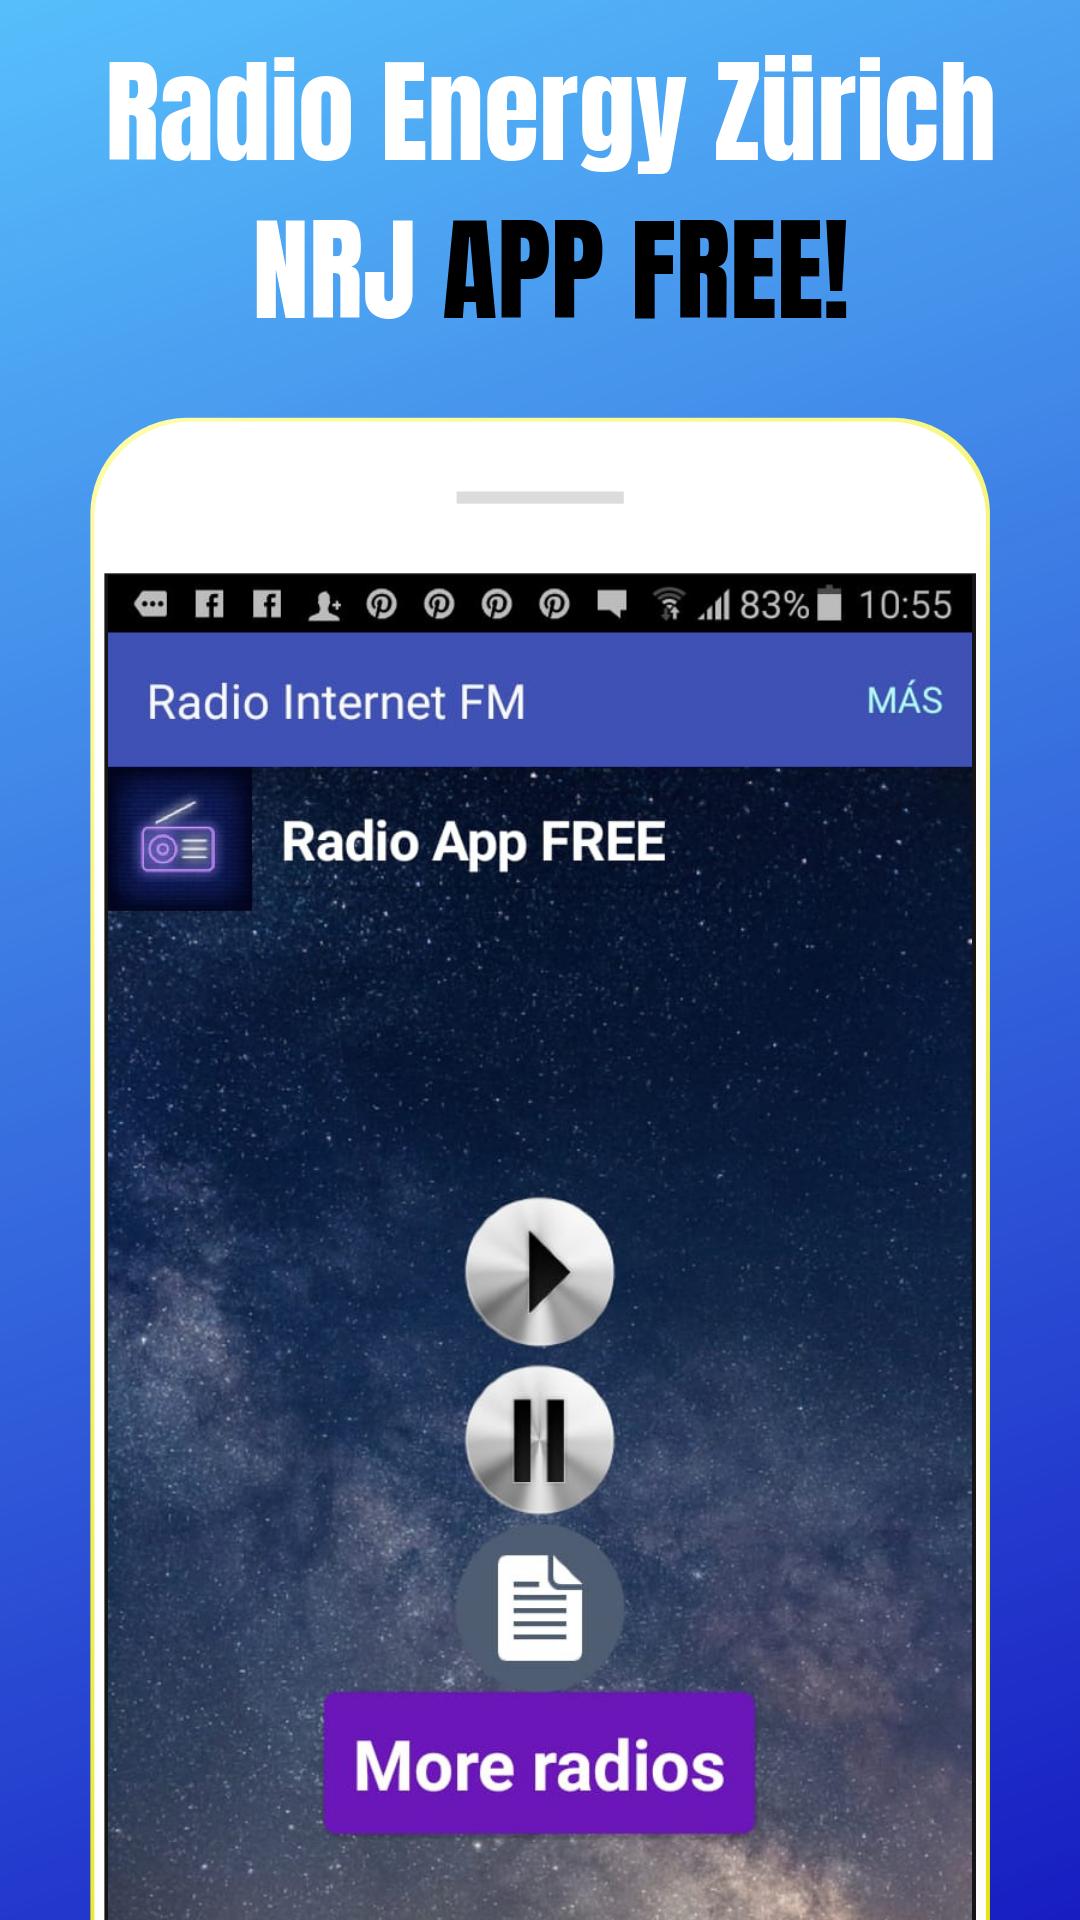 Radio Energy Zurich NRJ Switzerland FM Online CH for Android - APK Download